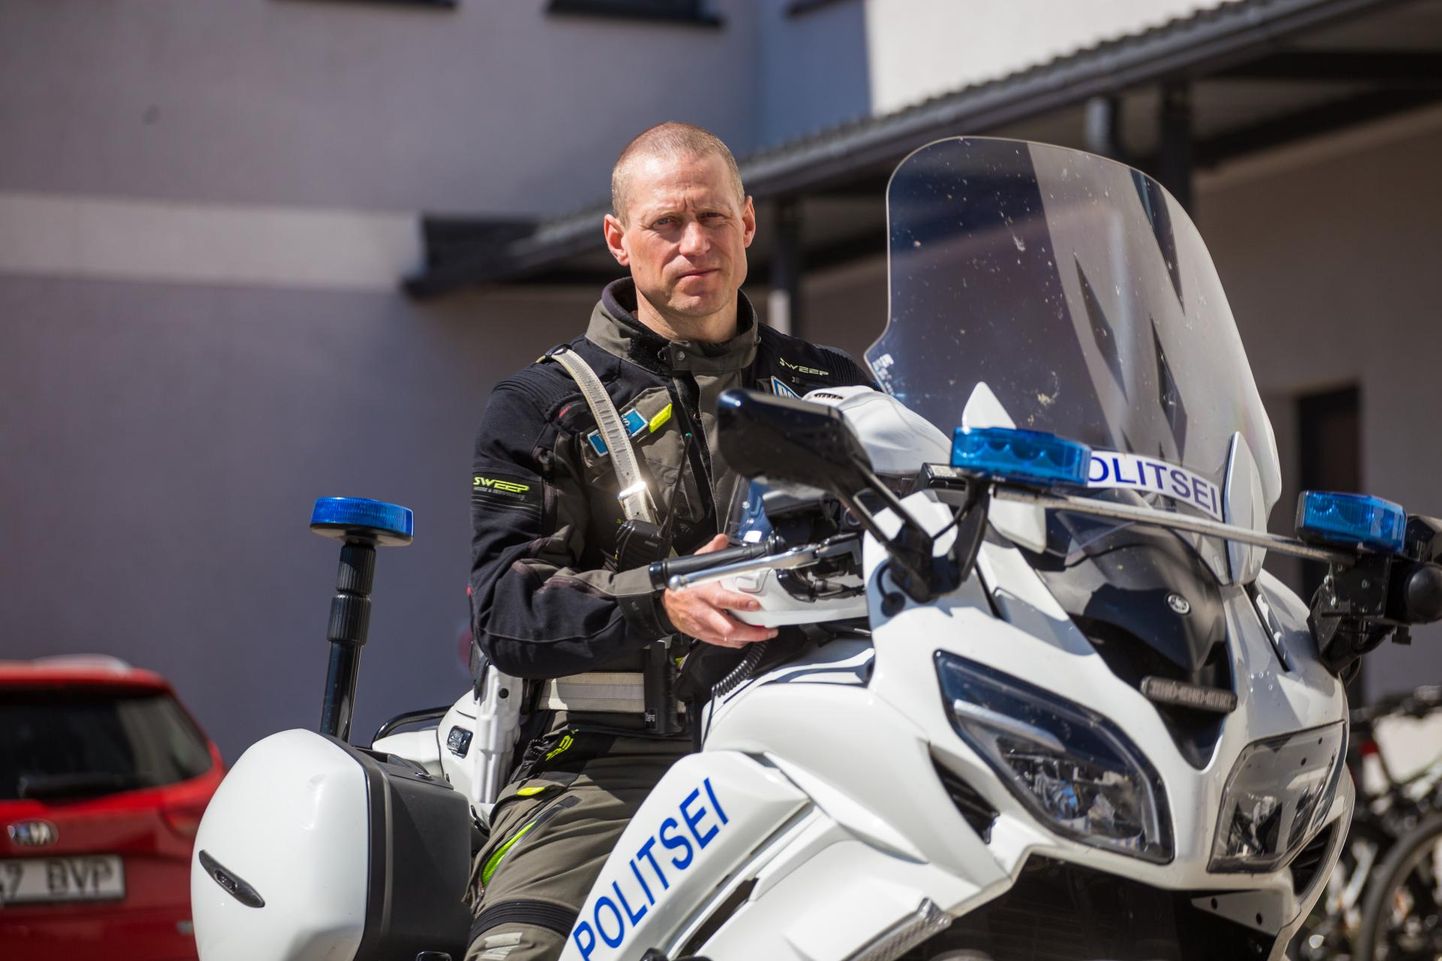 Eestis suurima hulga läbisõidukilomeetreid kogunud motopolitseinikul Toomas Kivilol on kasutuses juba neljas ametitsikkel – Yamaha FJR 1300.